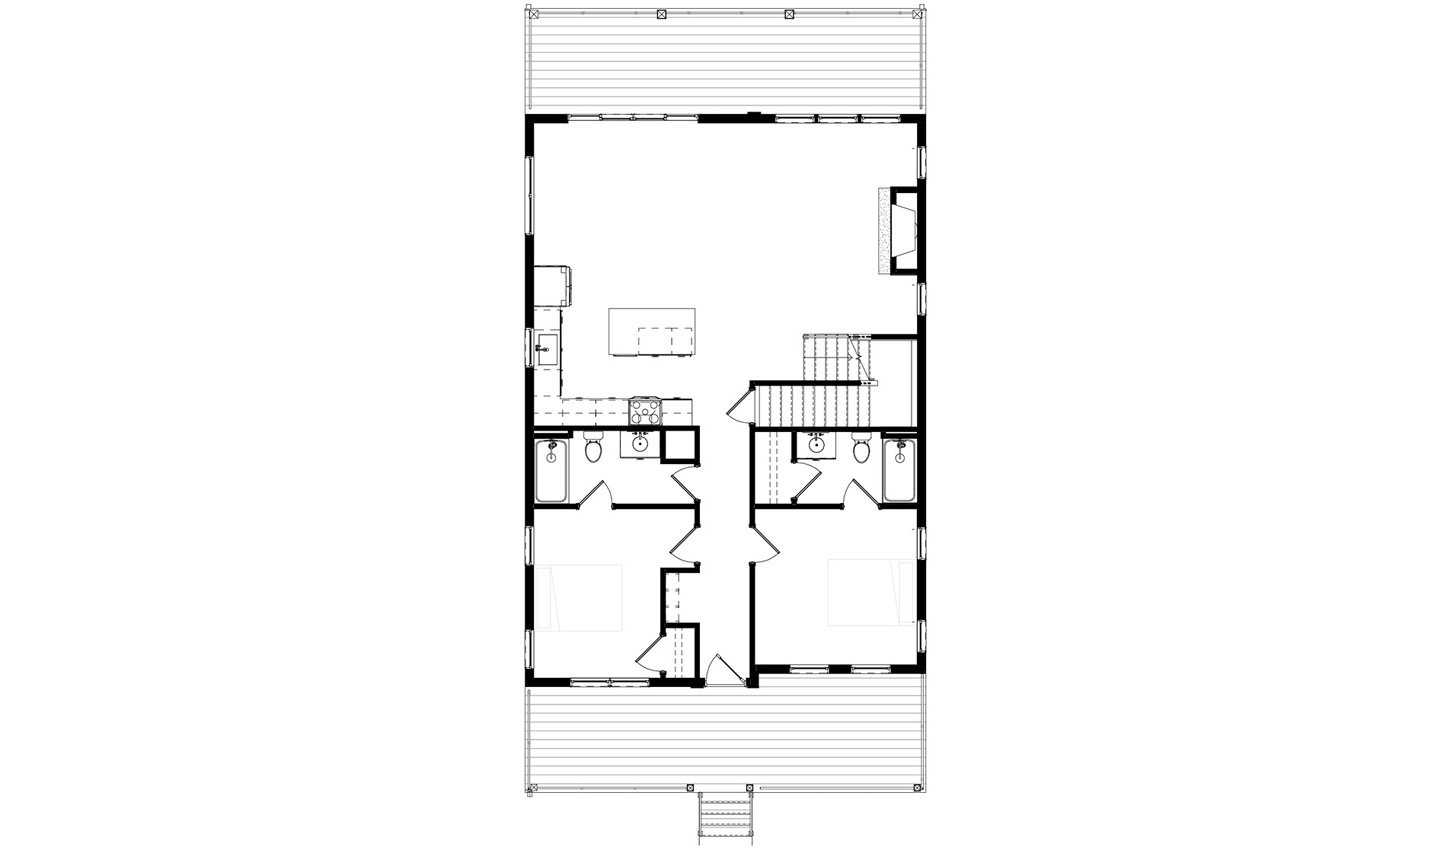 Floor plan of the 5 bedroom middle level floor plan